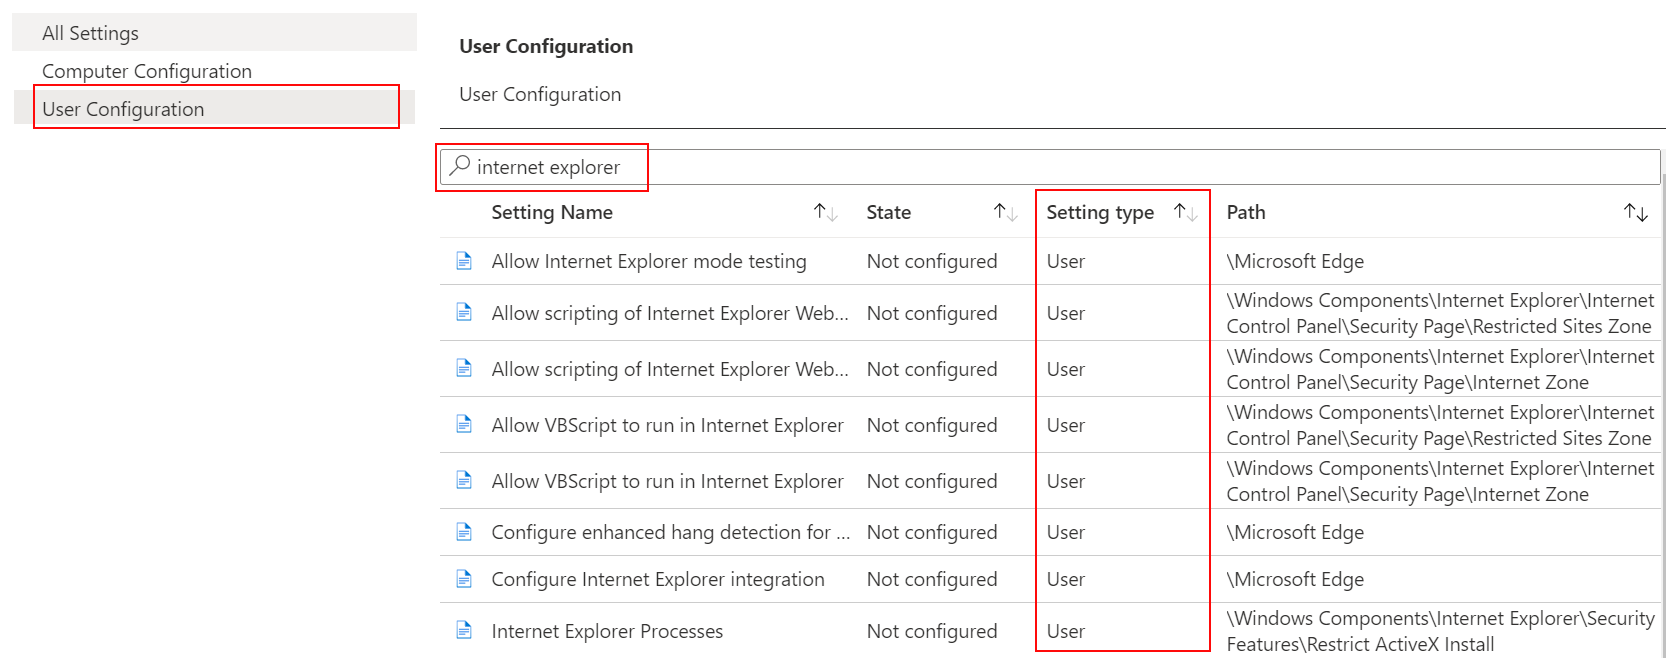 В шаблоне ADMX выберите конфигурацию пользователя и выполните поиск или фильтрацию для Internet Explorer в Microsoft Intune.